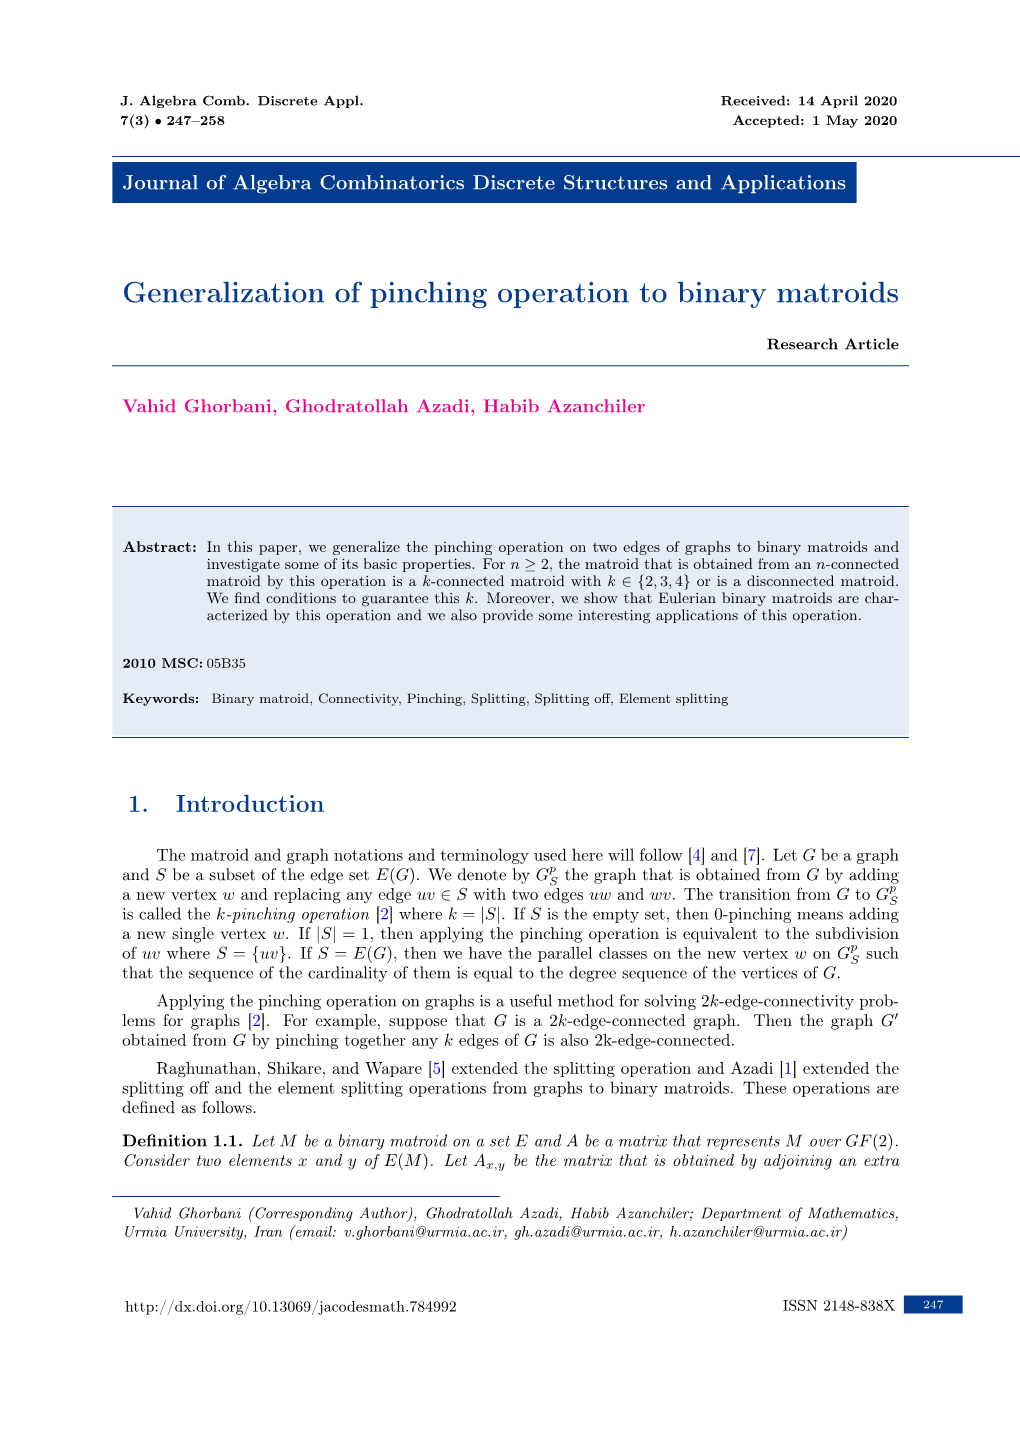 Generalization of Pinching Operation to Binary Matroids